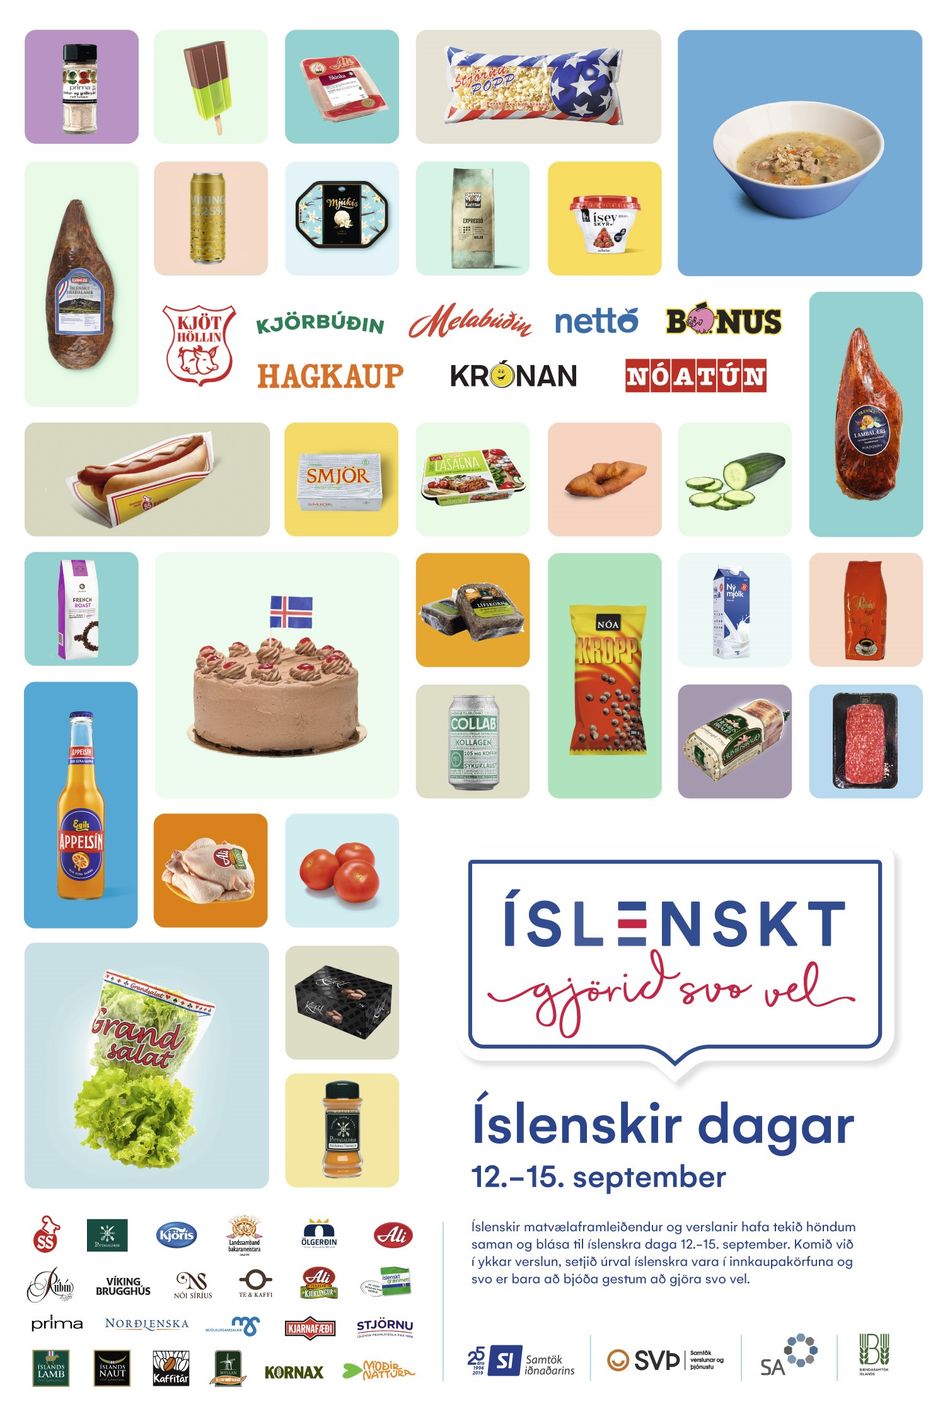 Islenskir-dagar_12-15-september-2019